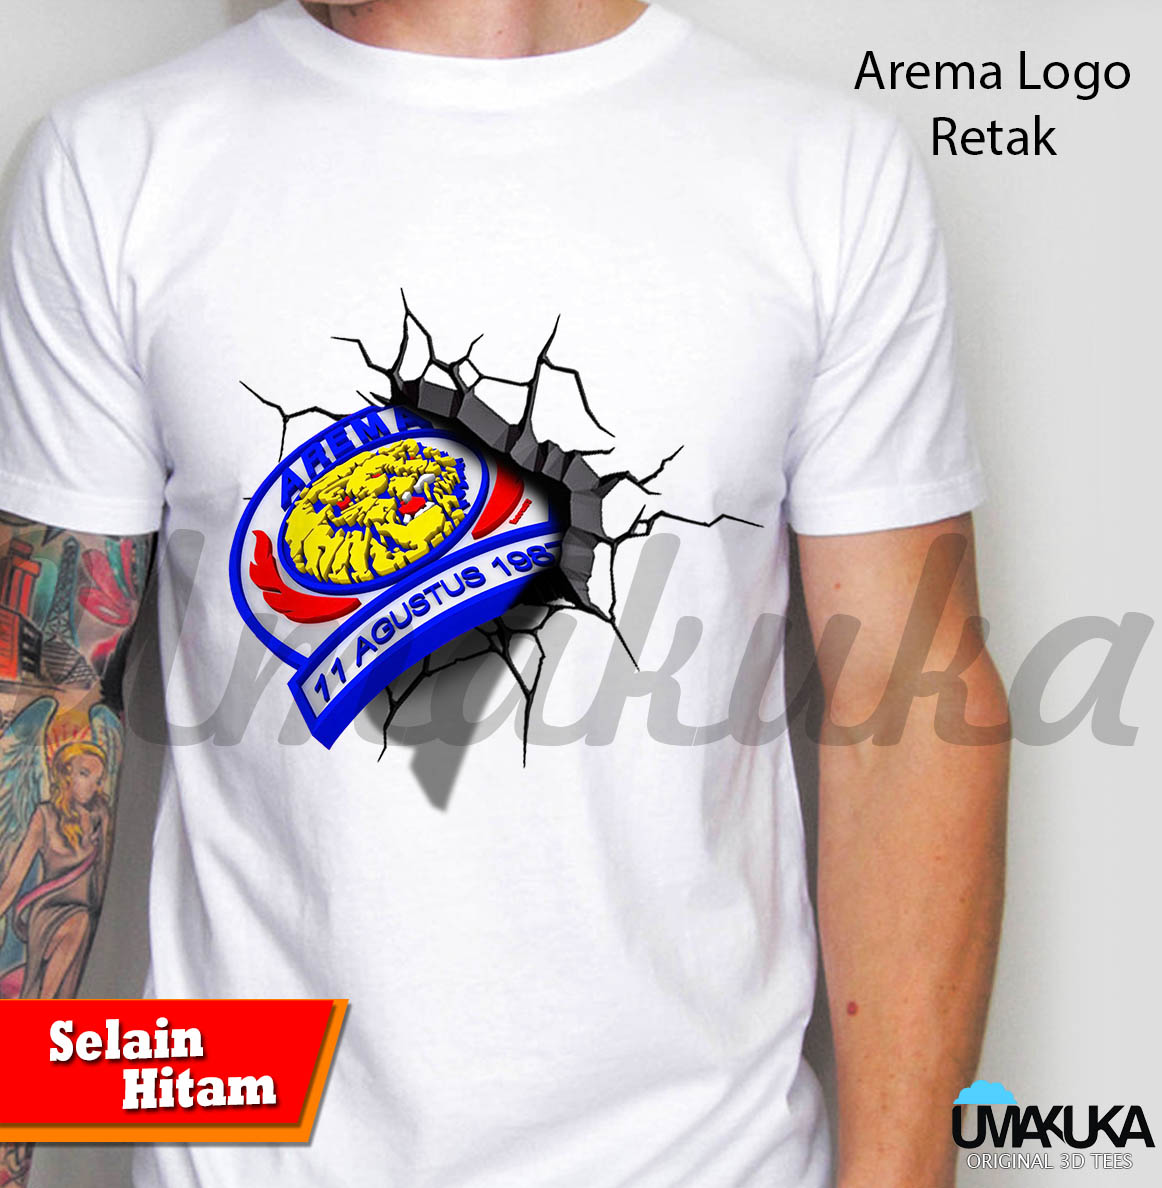 Arema Logo Retak Copy PUSAT KAOS 3D